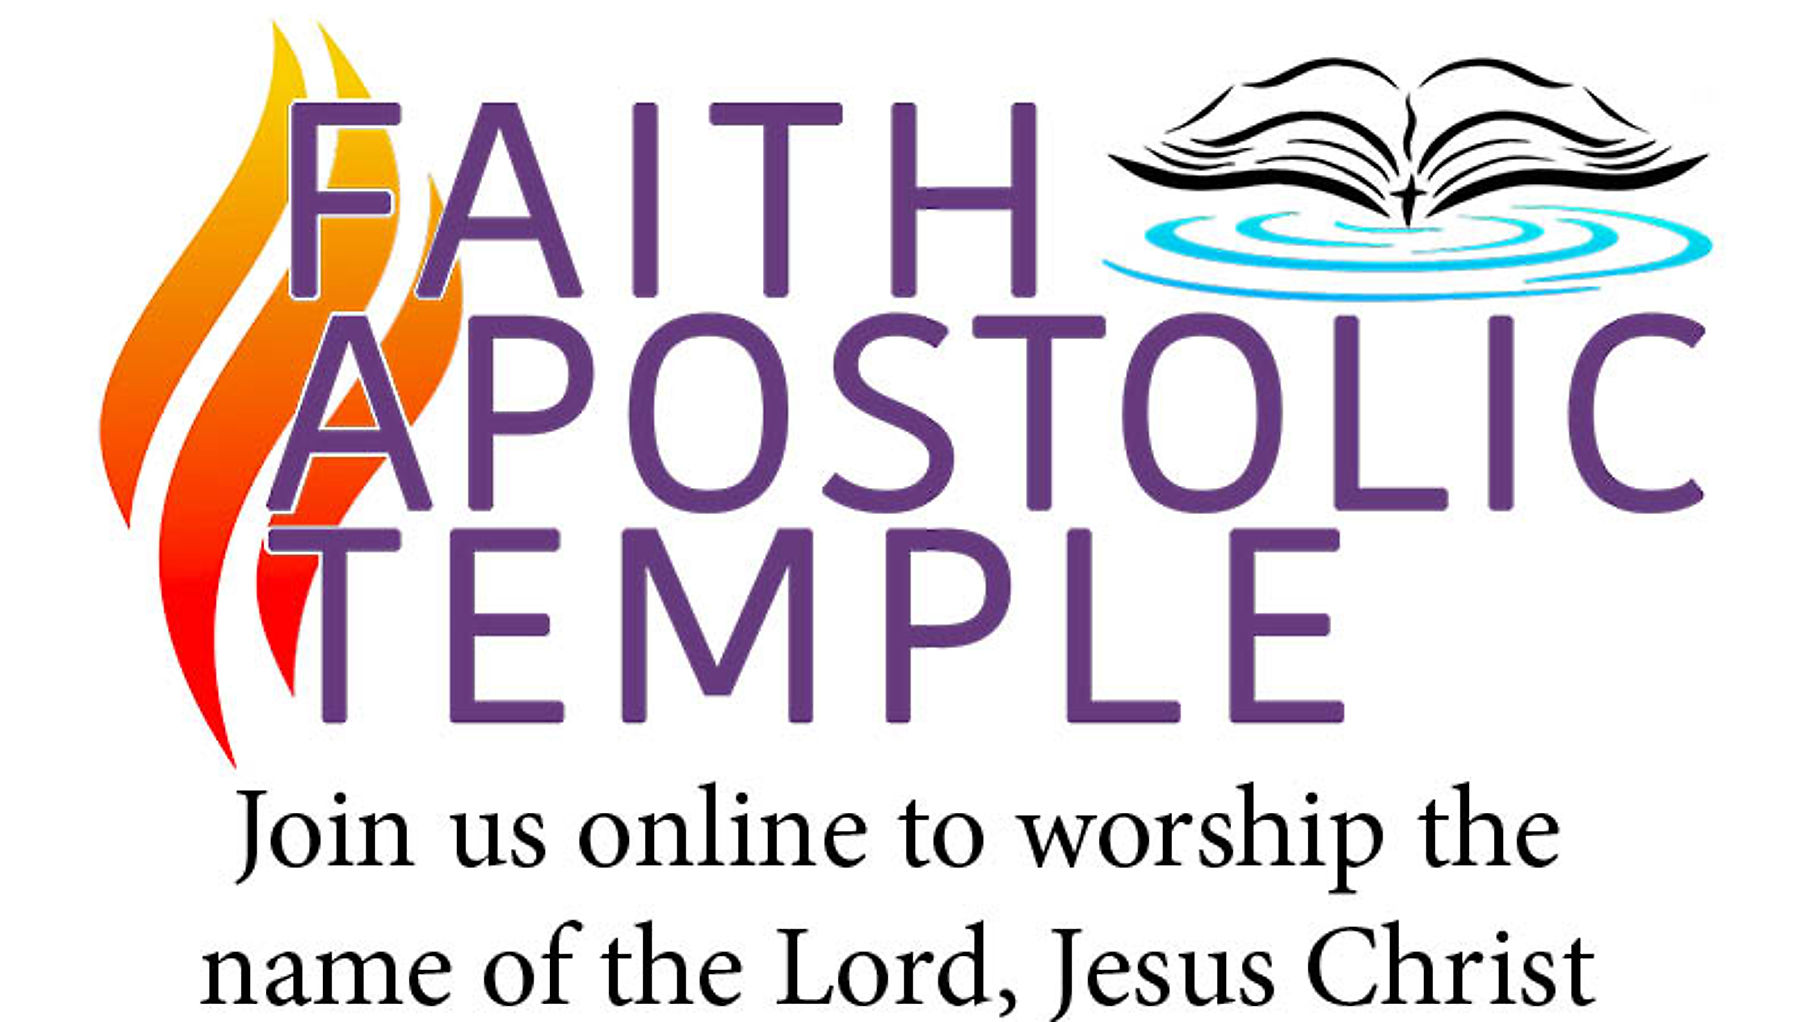 Virtual Church Services